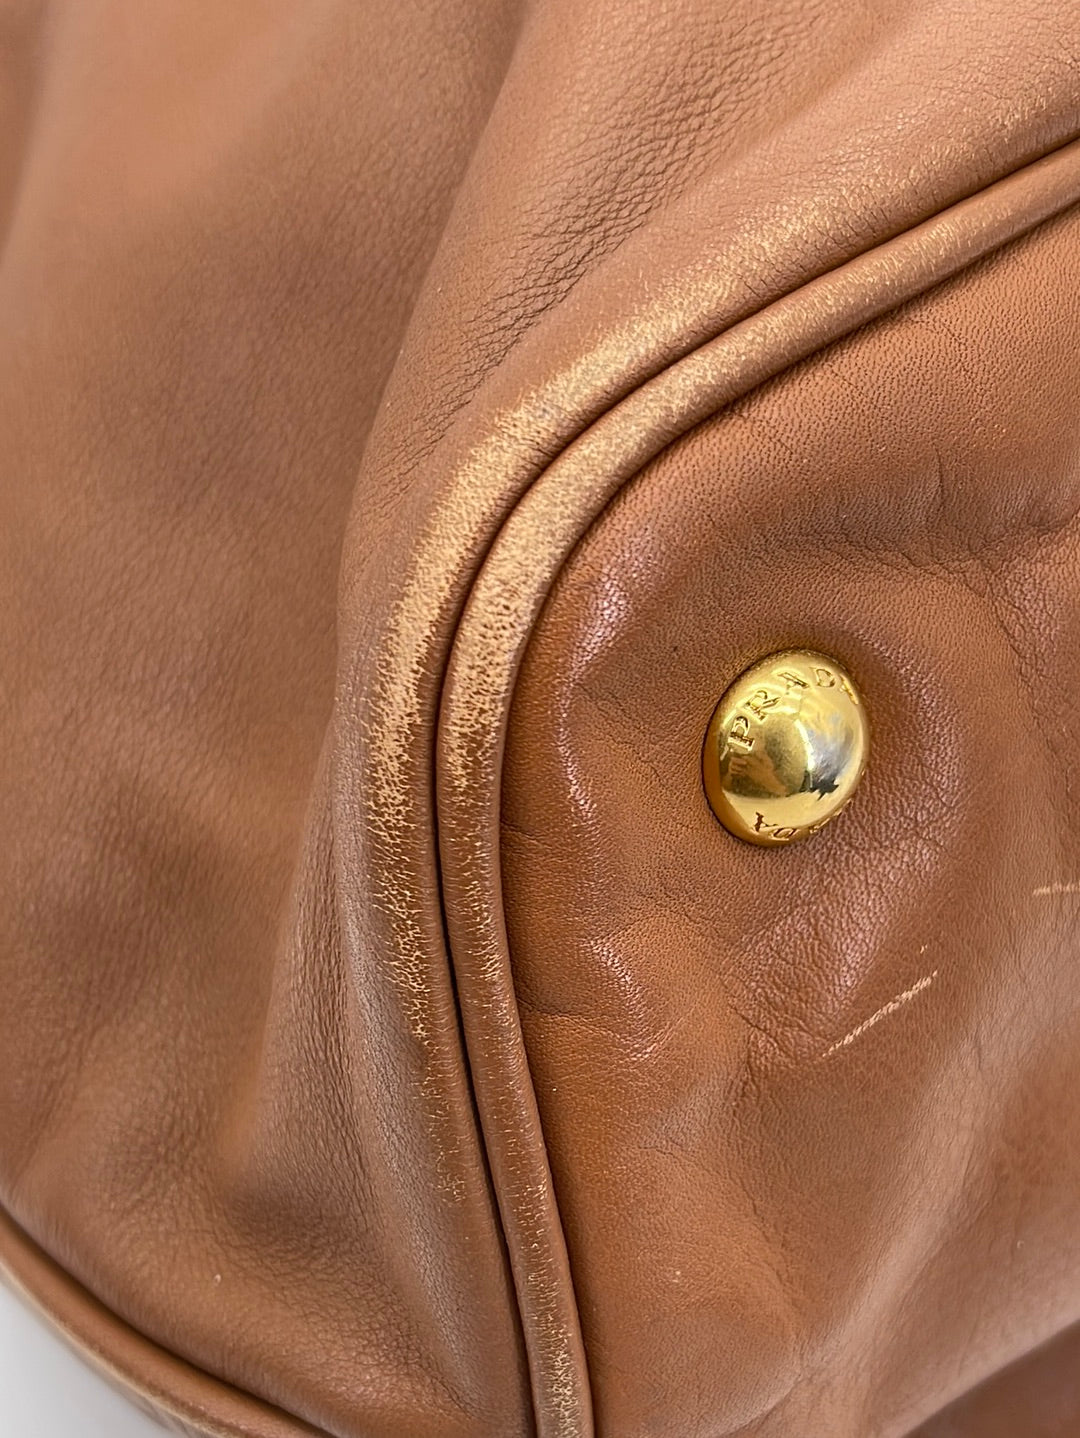 An vitello daino leather Prada bag. - Bukowskis